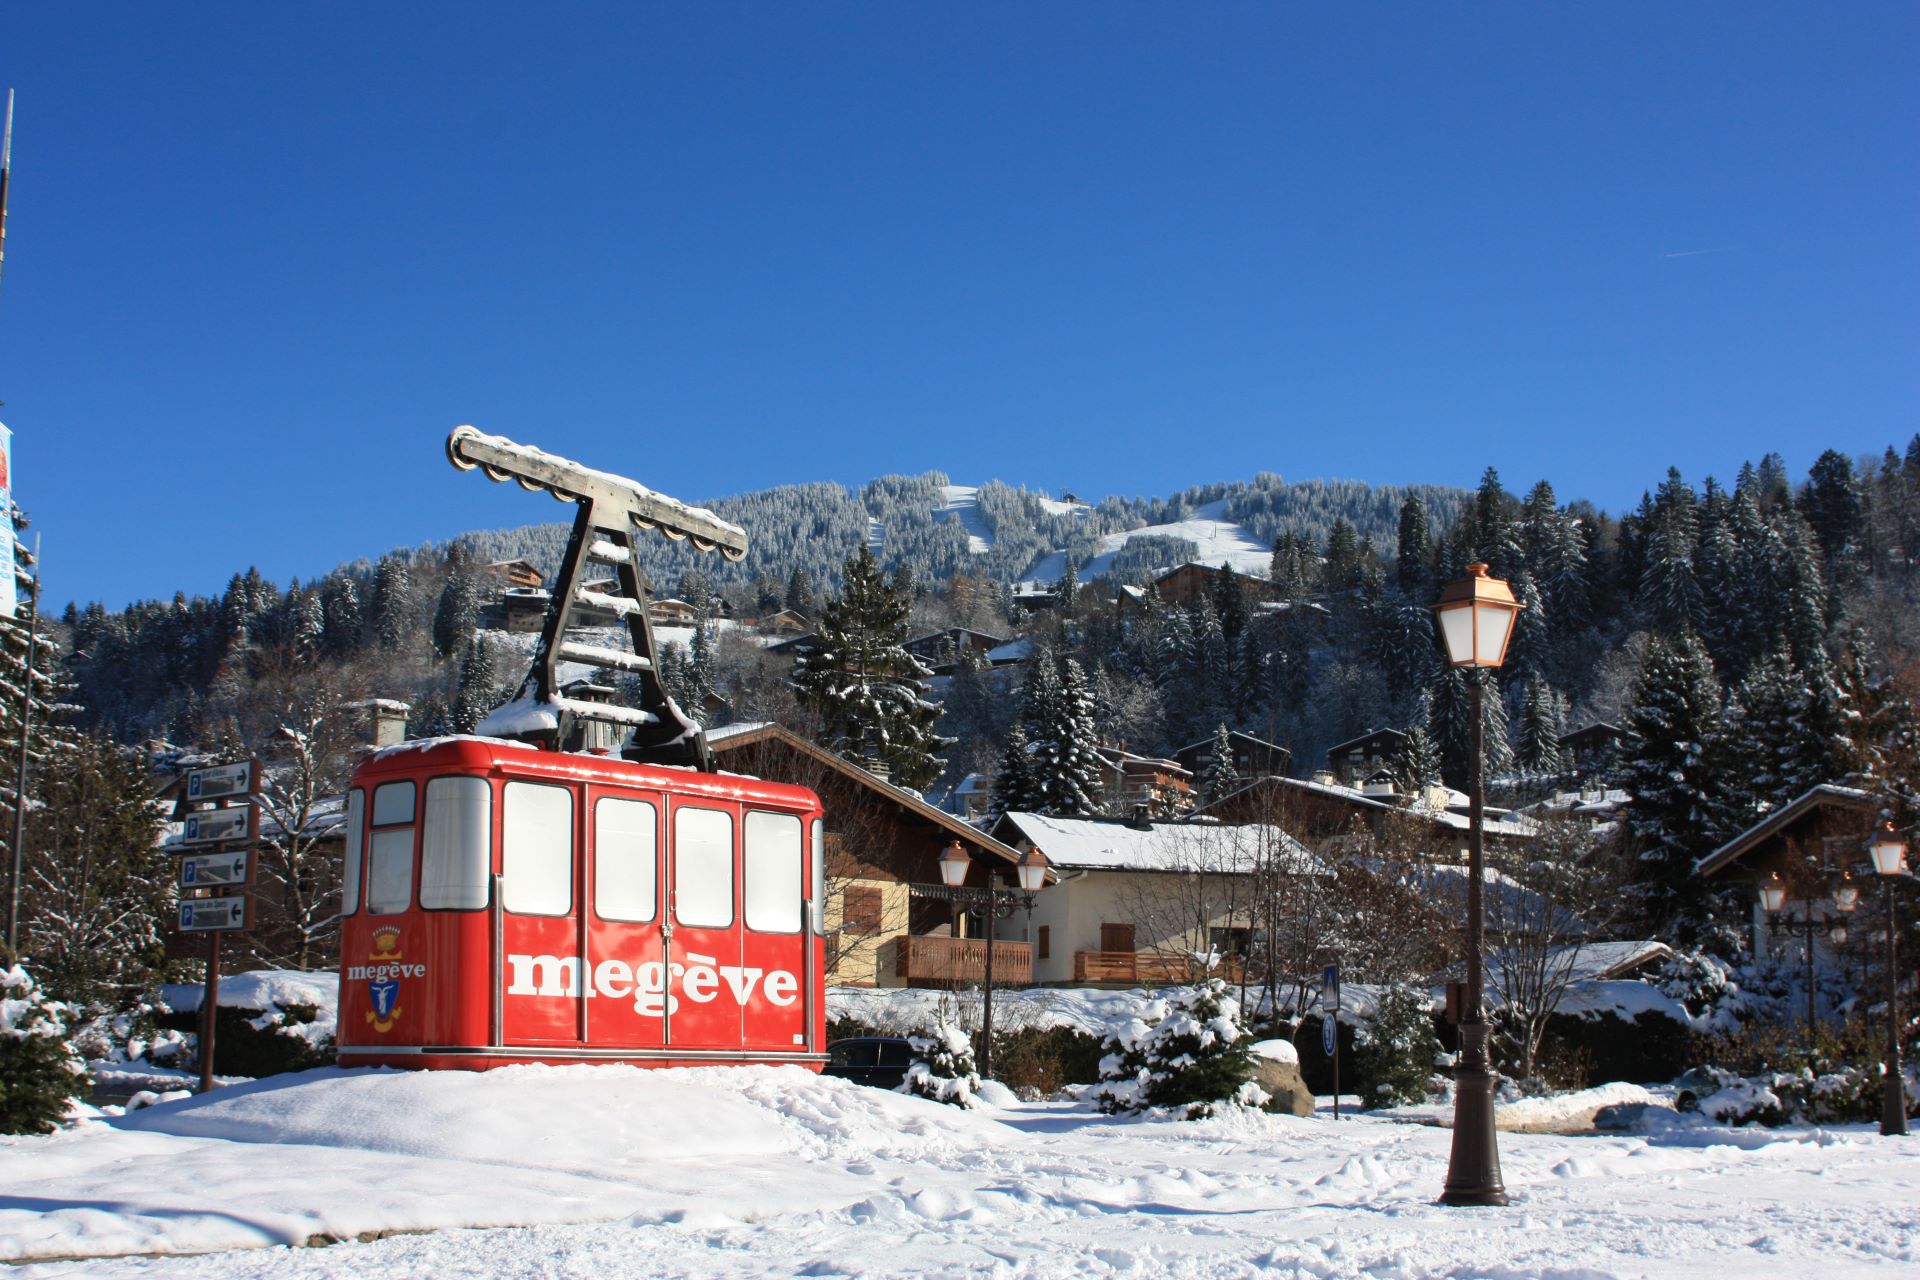 Megeve-ski-resort-french-alps